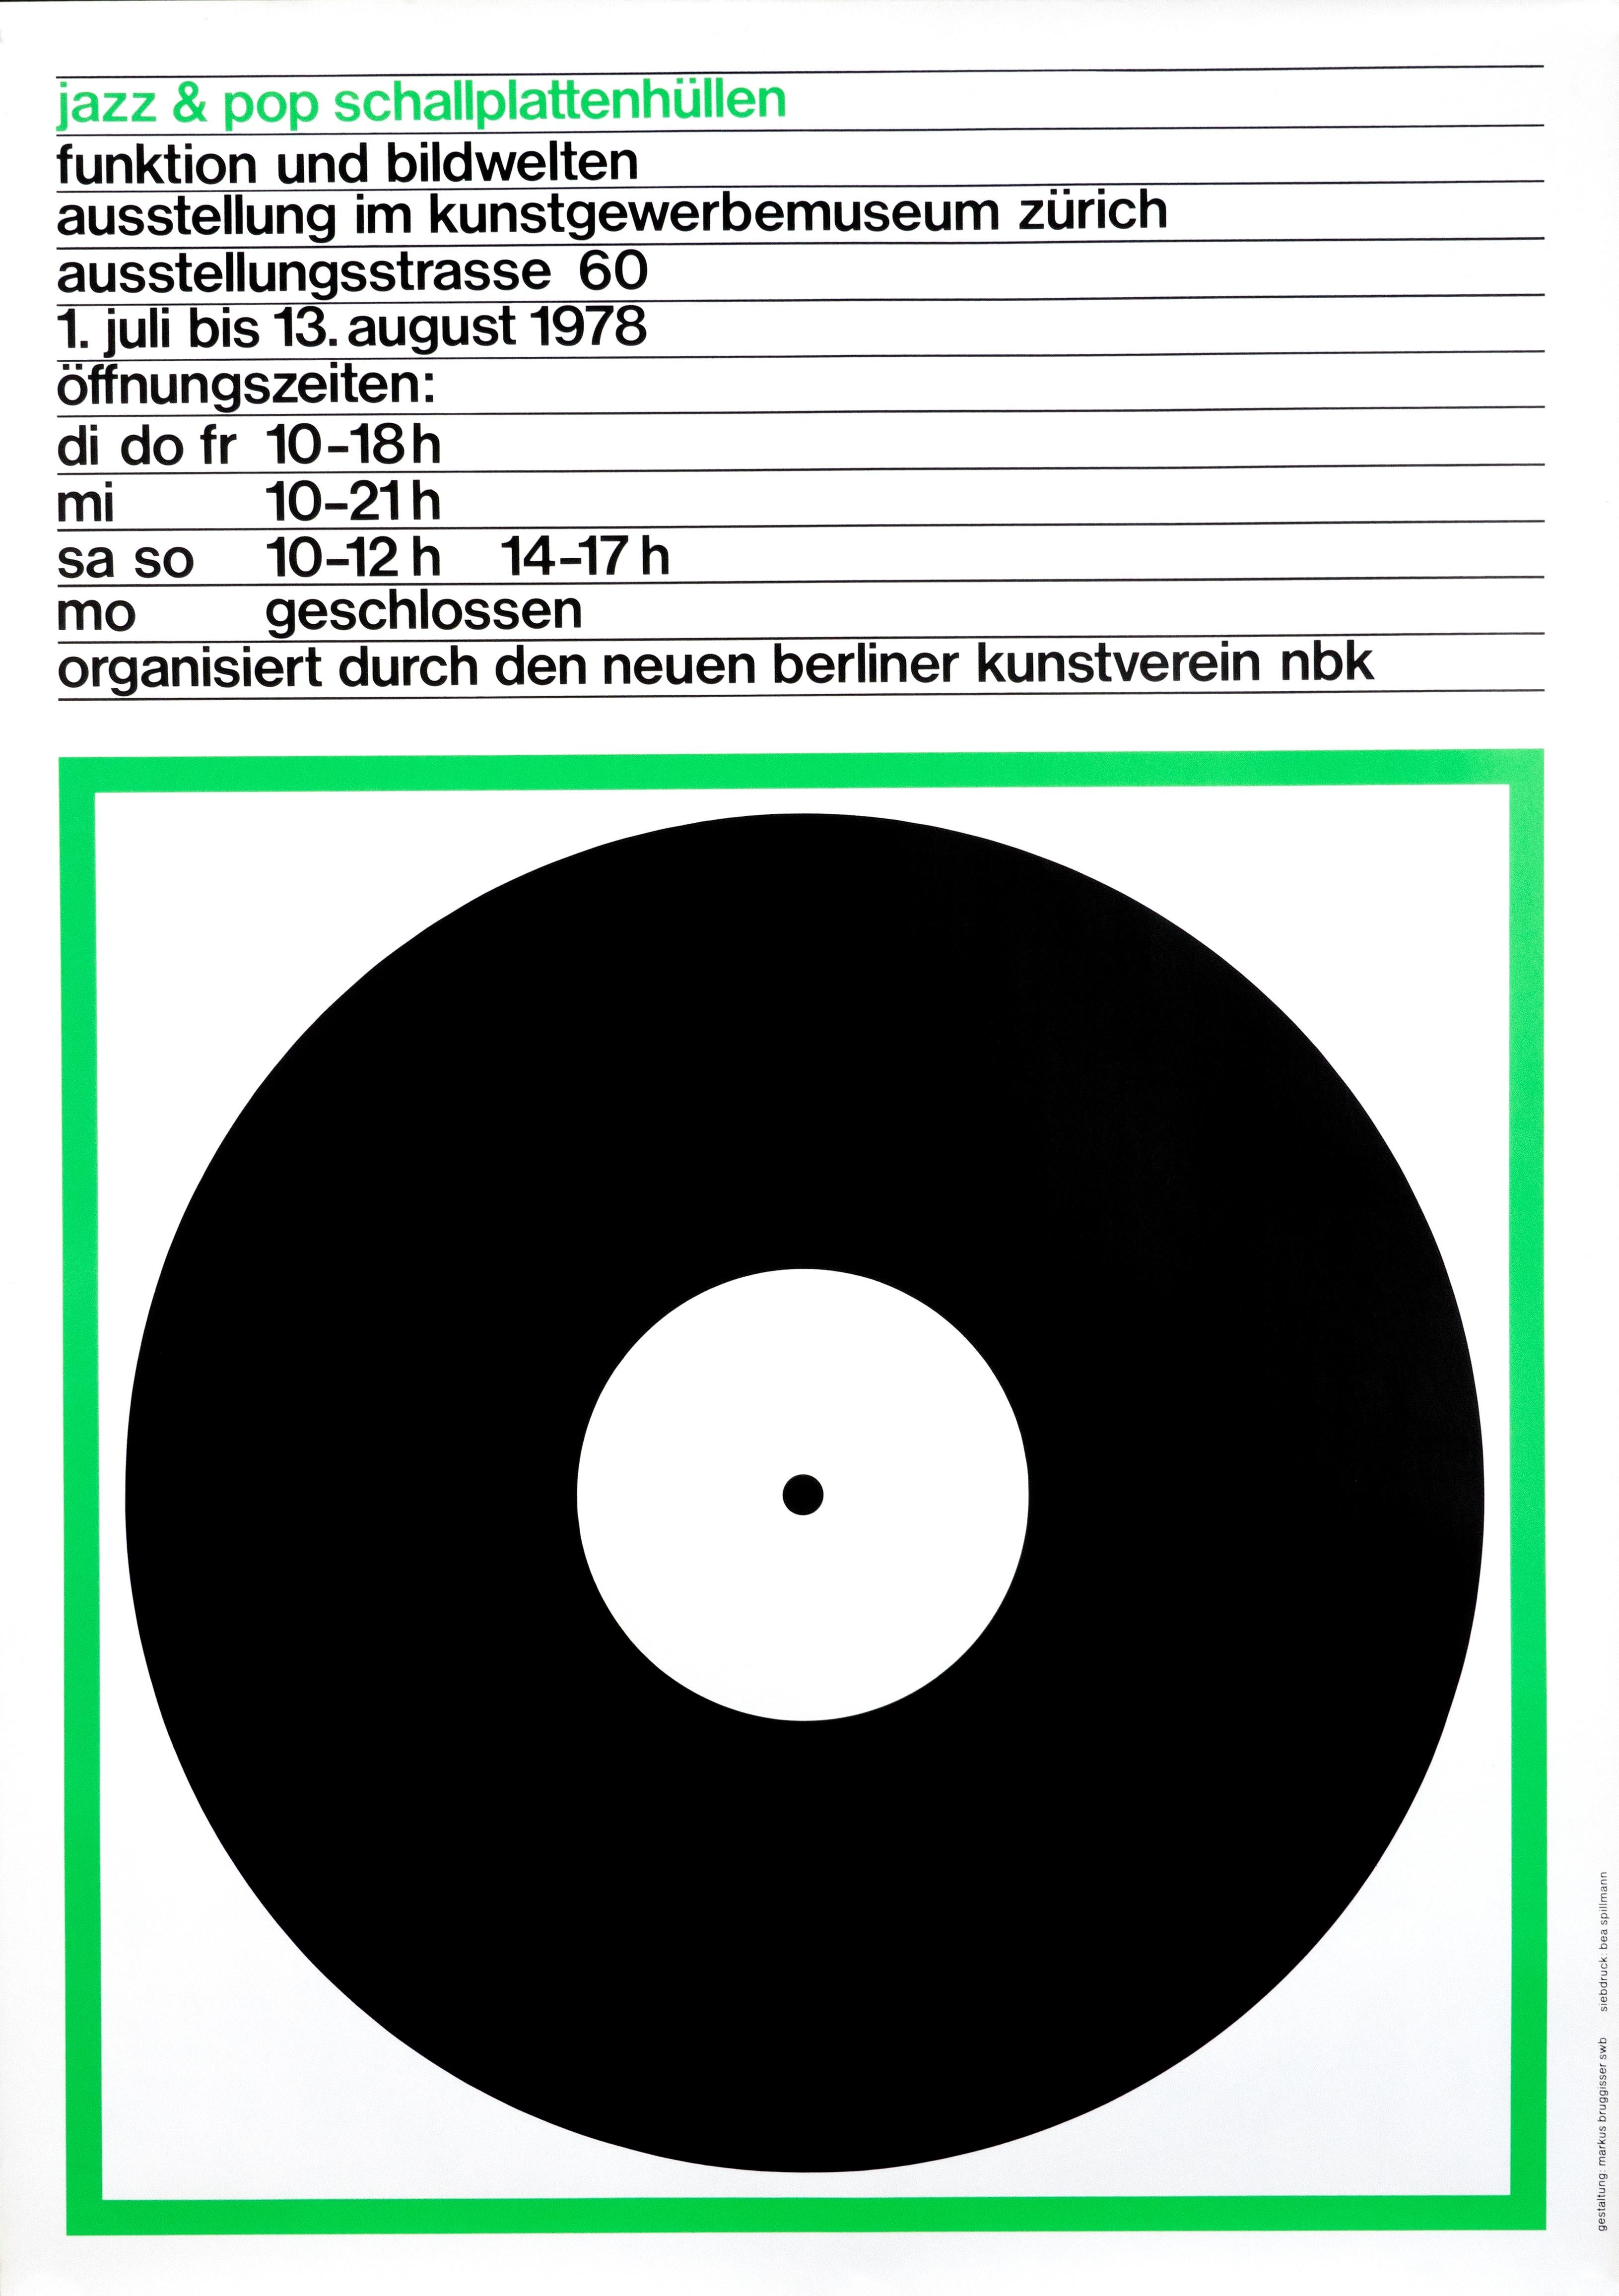 "Jazz & Pop Schallplattenhullen (Green)" Swiss Music Exhibition Original Poster - Print by Markus Bruggisser